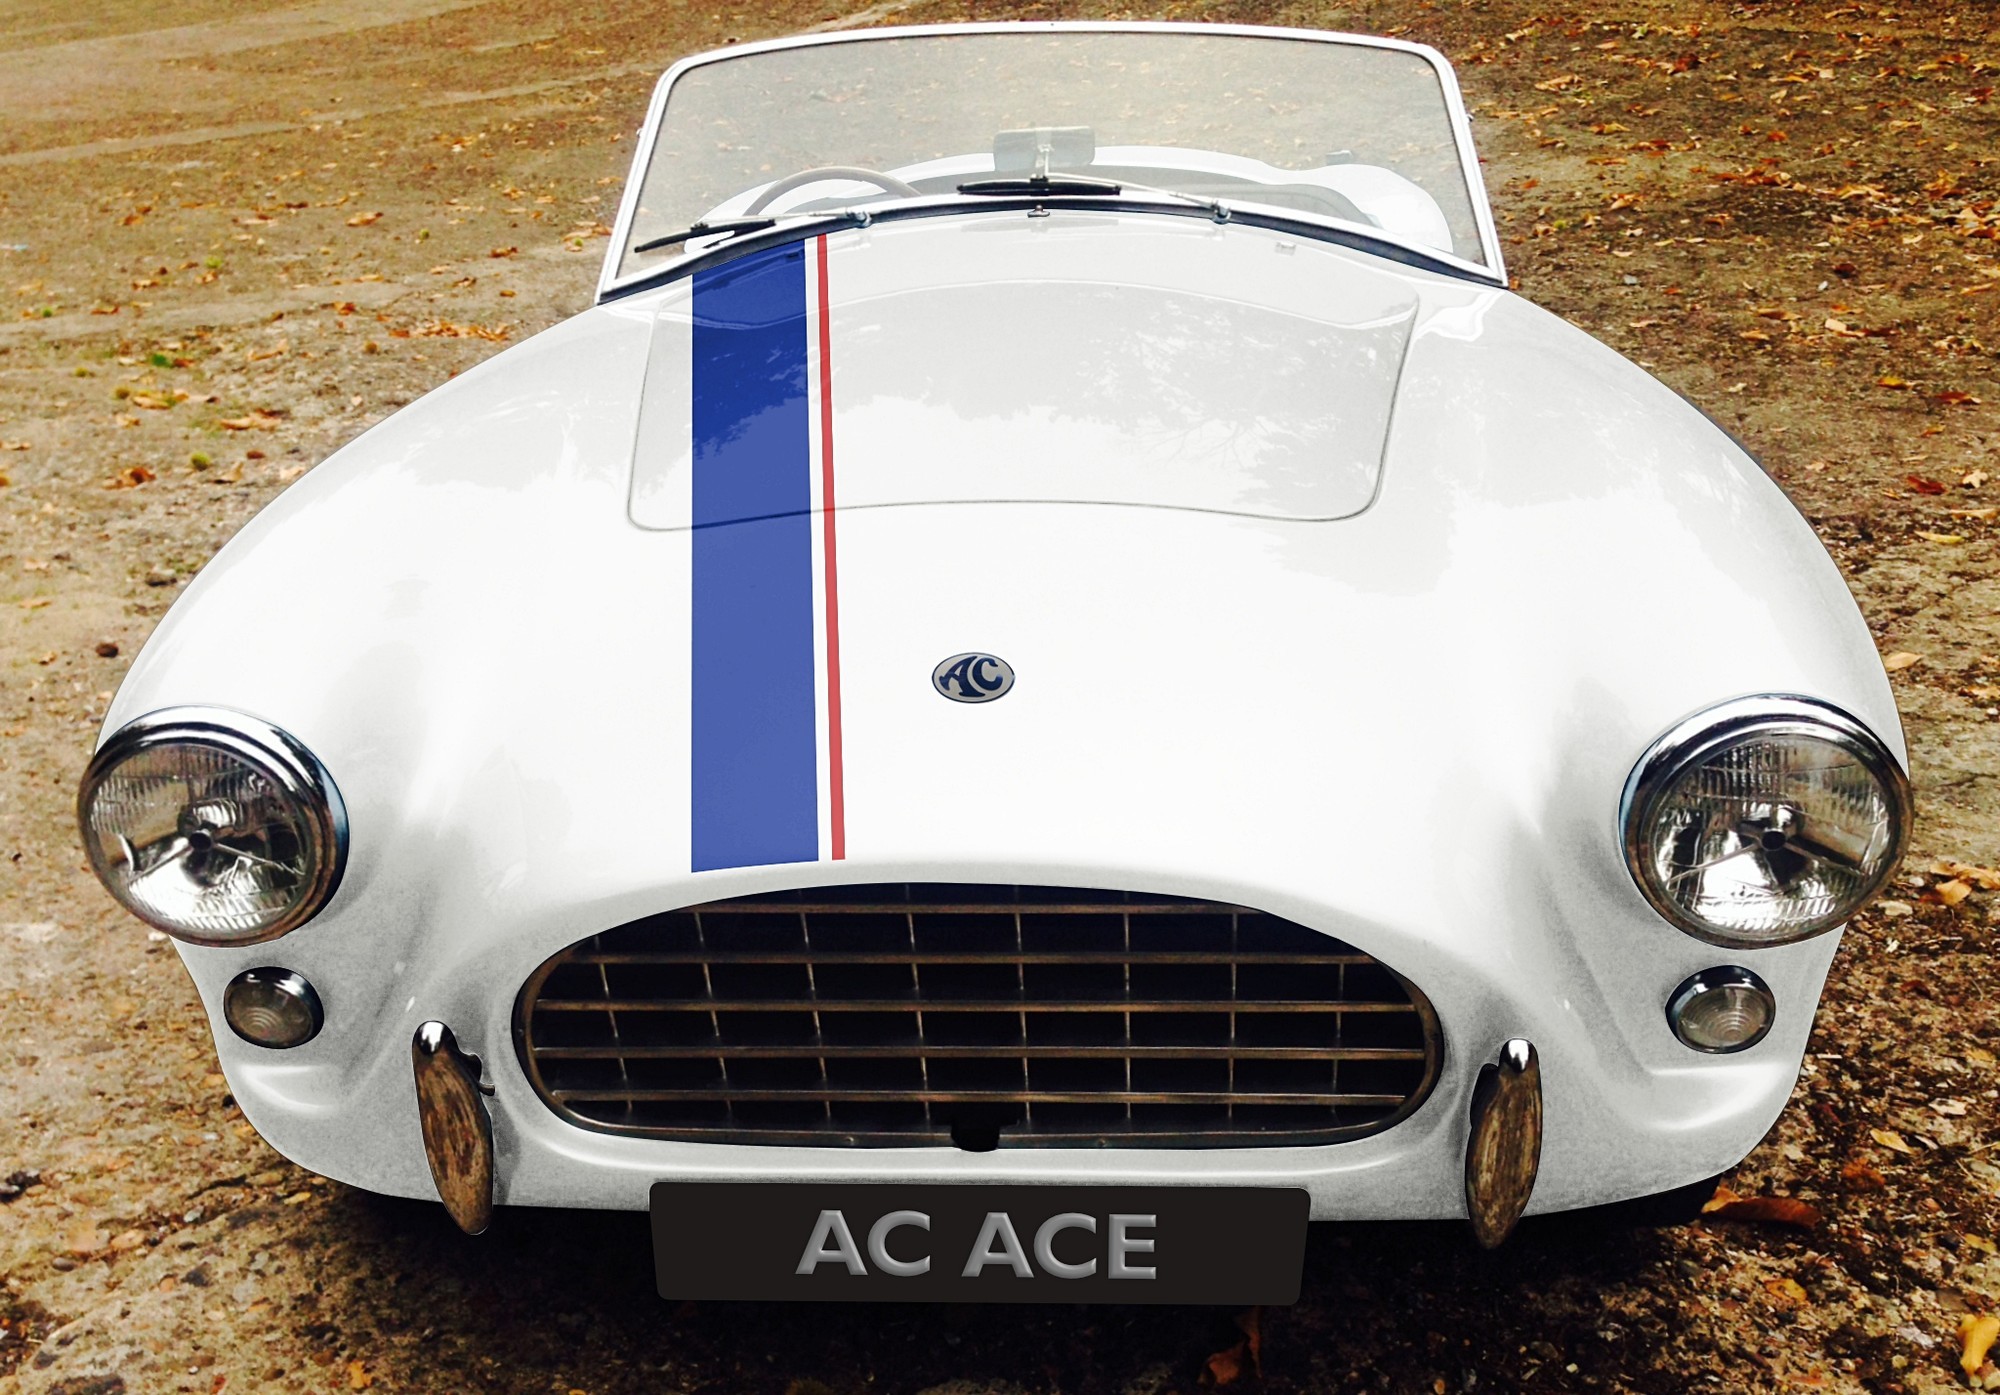 AC Ace RS вернулся и стал последним бензиновым спорткаром британской марки